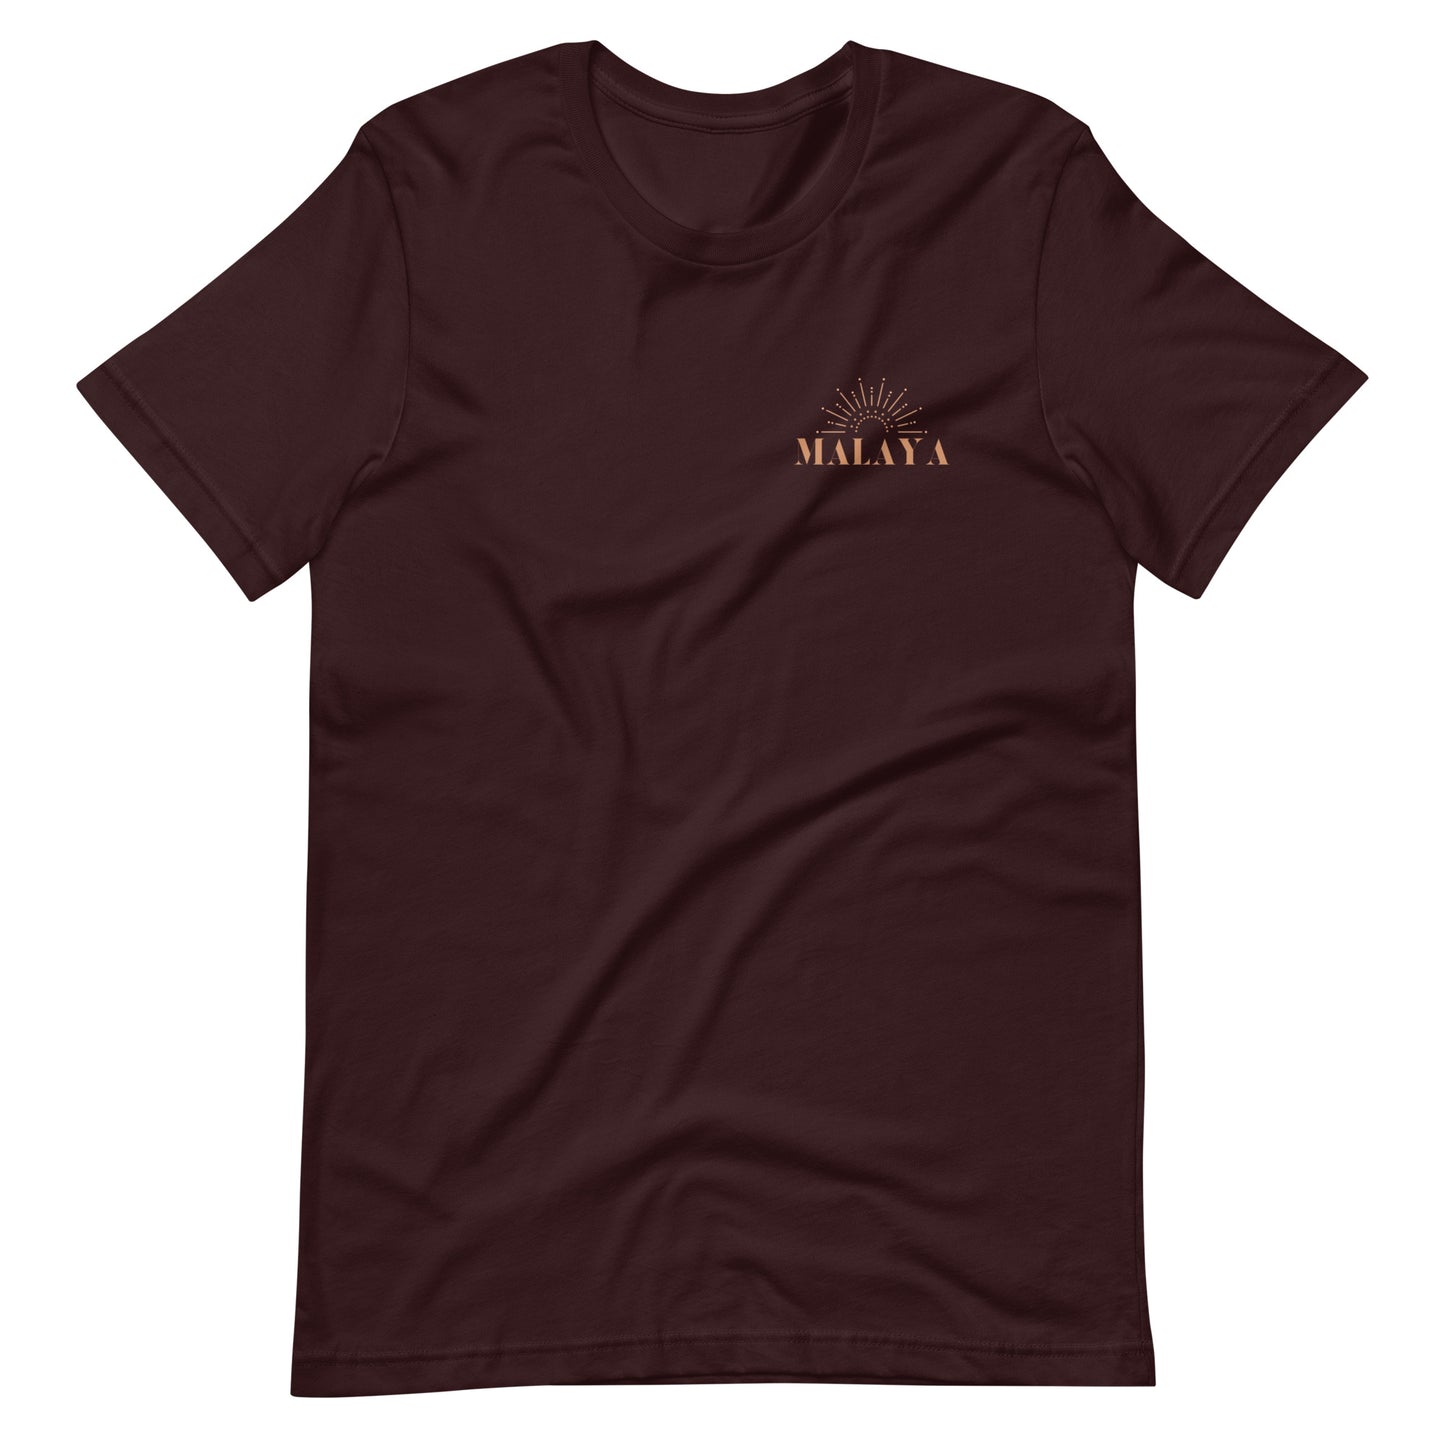 MALAYA Stay Wild & Free Unisex T-Shirt